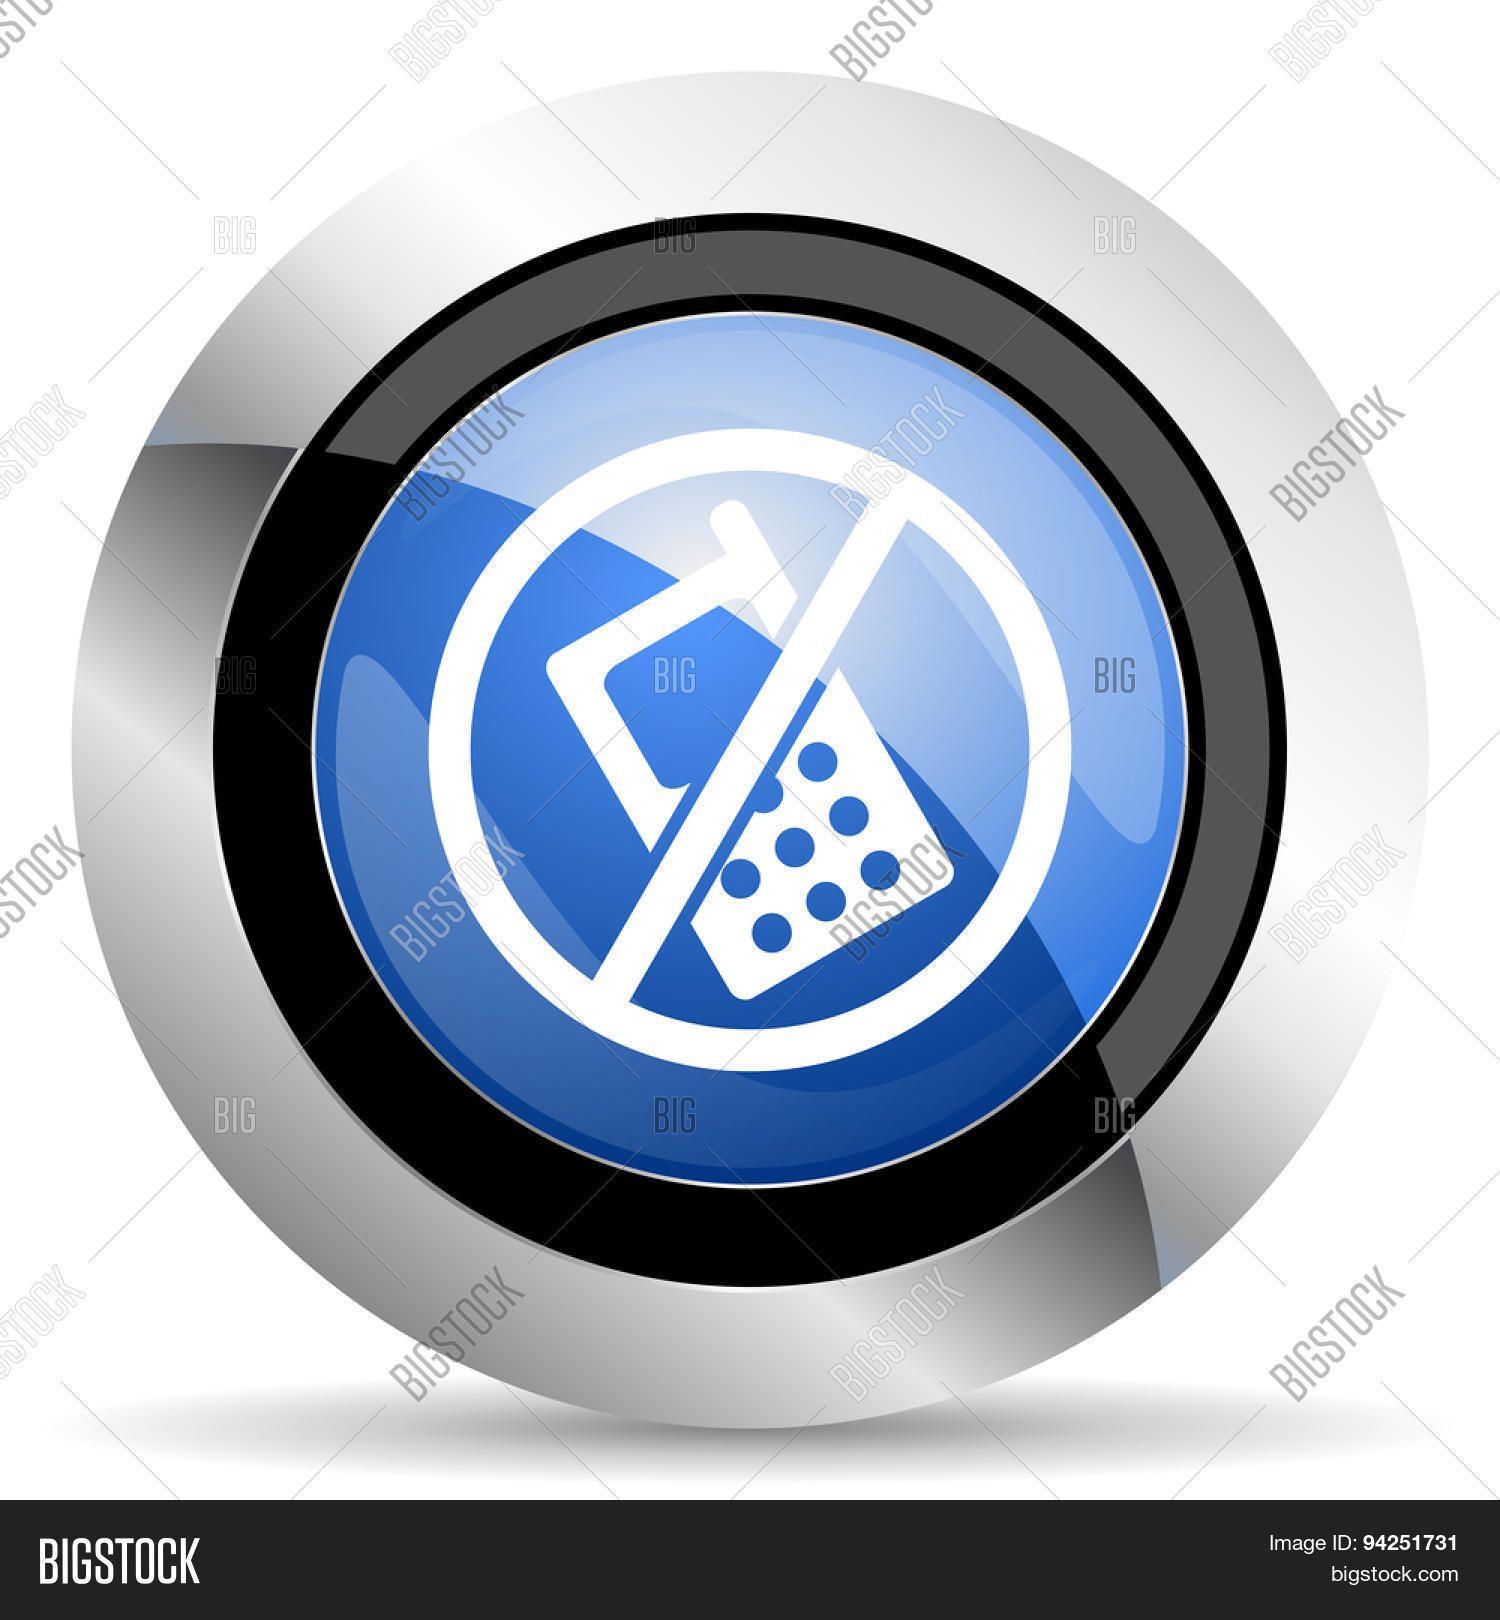 No Calls Logo - no Phone Icon no Calls Sign Original Modern Design for Image